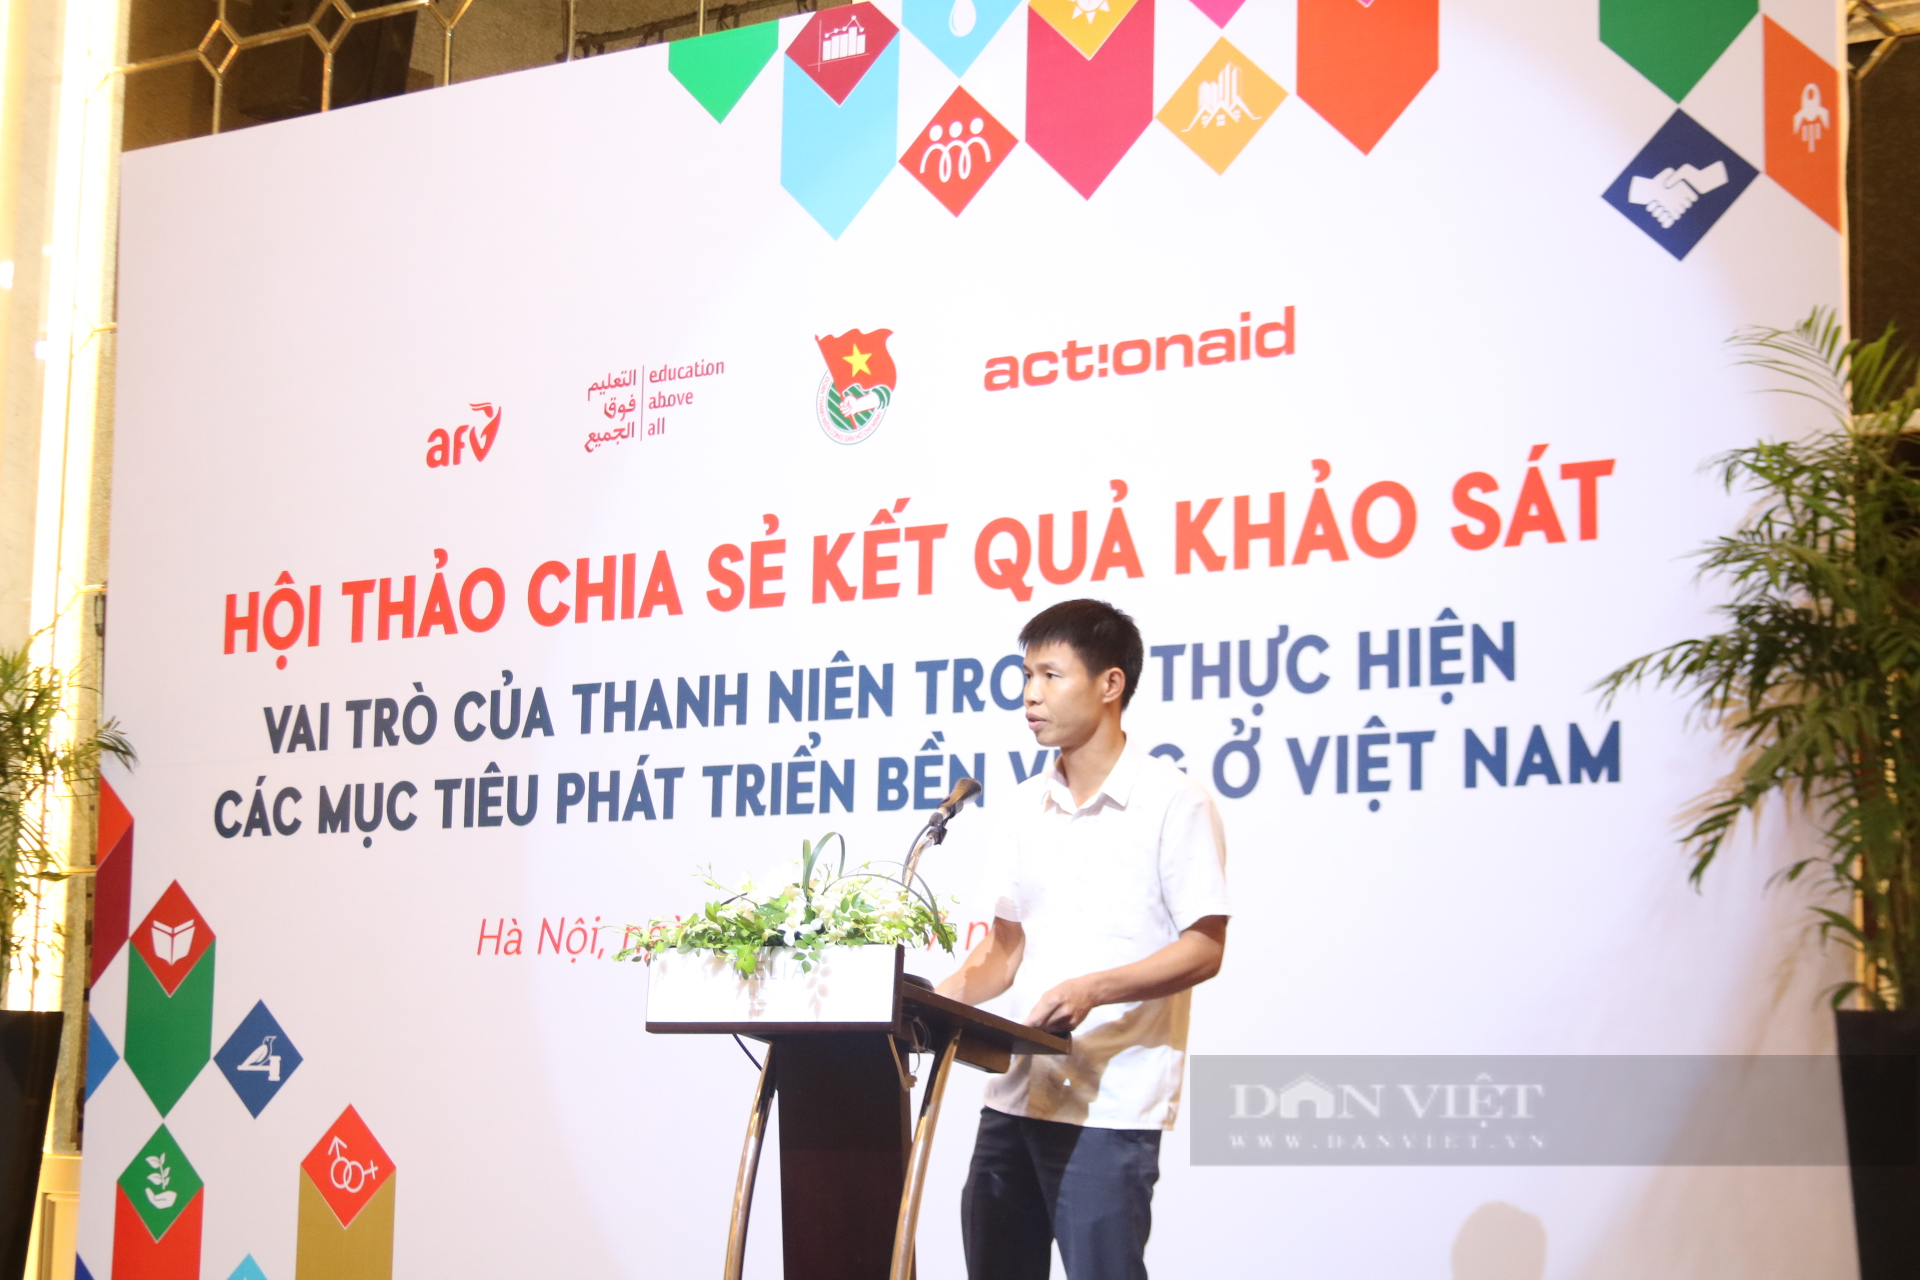 Thanh niên Việt Nam có nhận thức đúng đắn về vai trò của công nghệ, kỹ thuật - Ảnh 2.